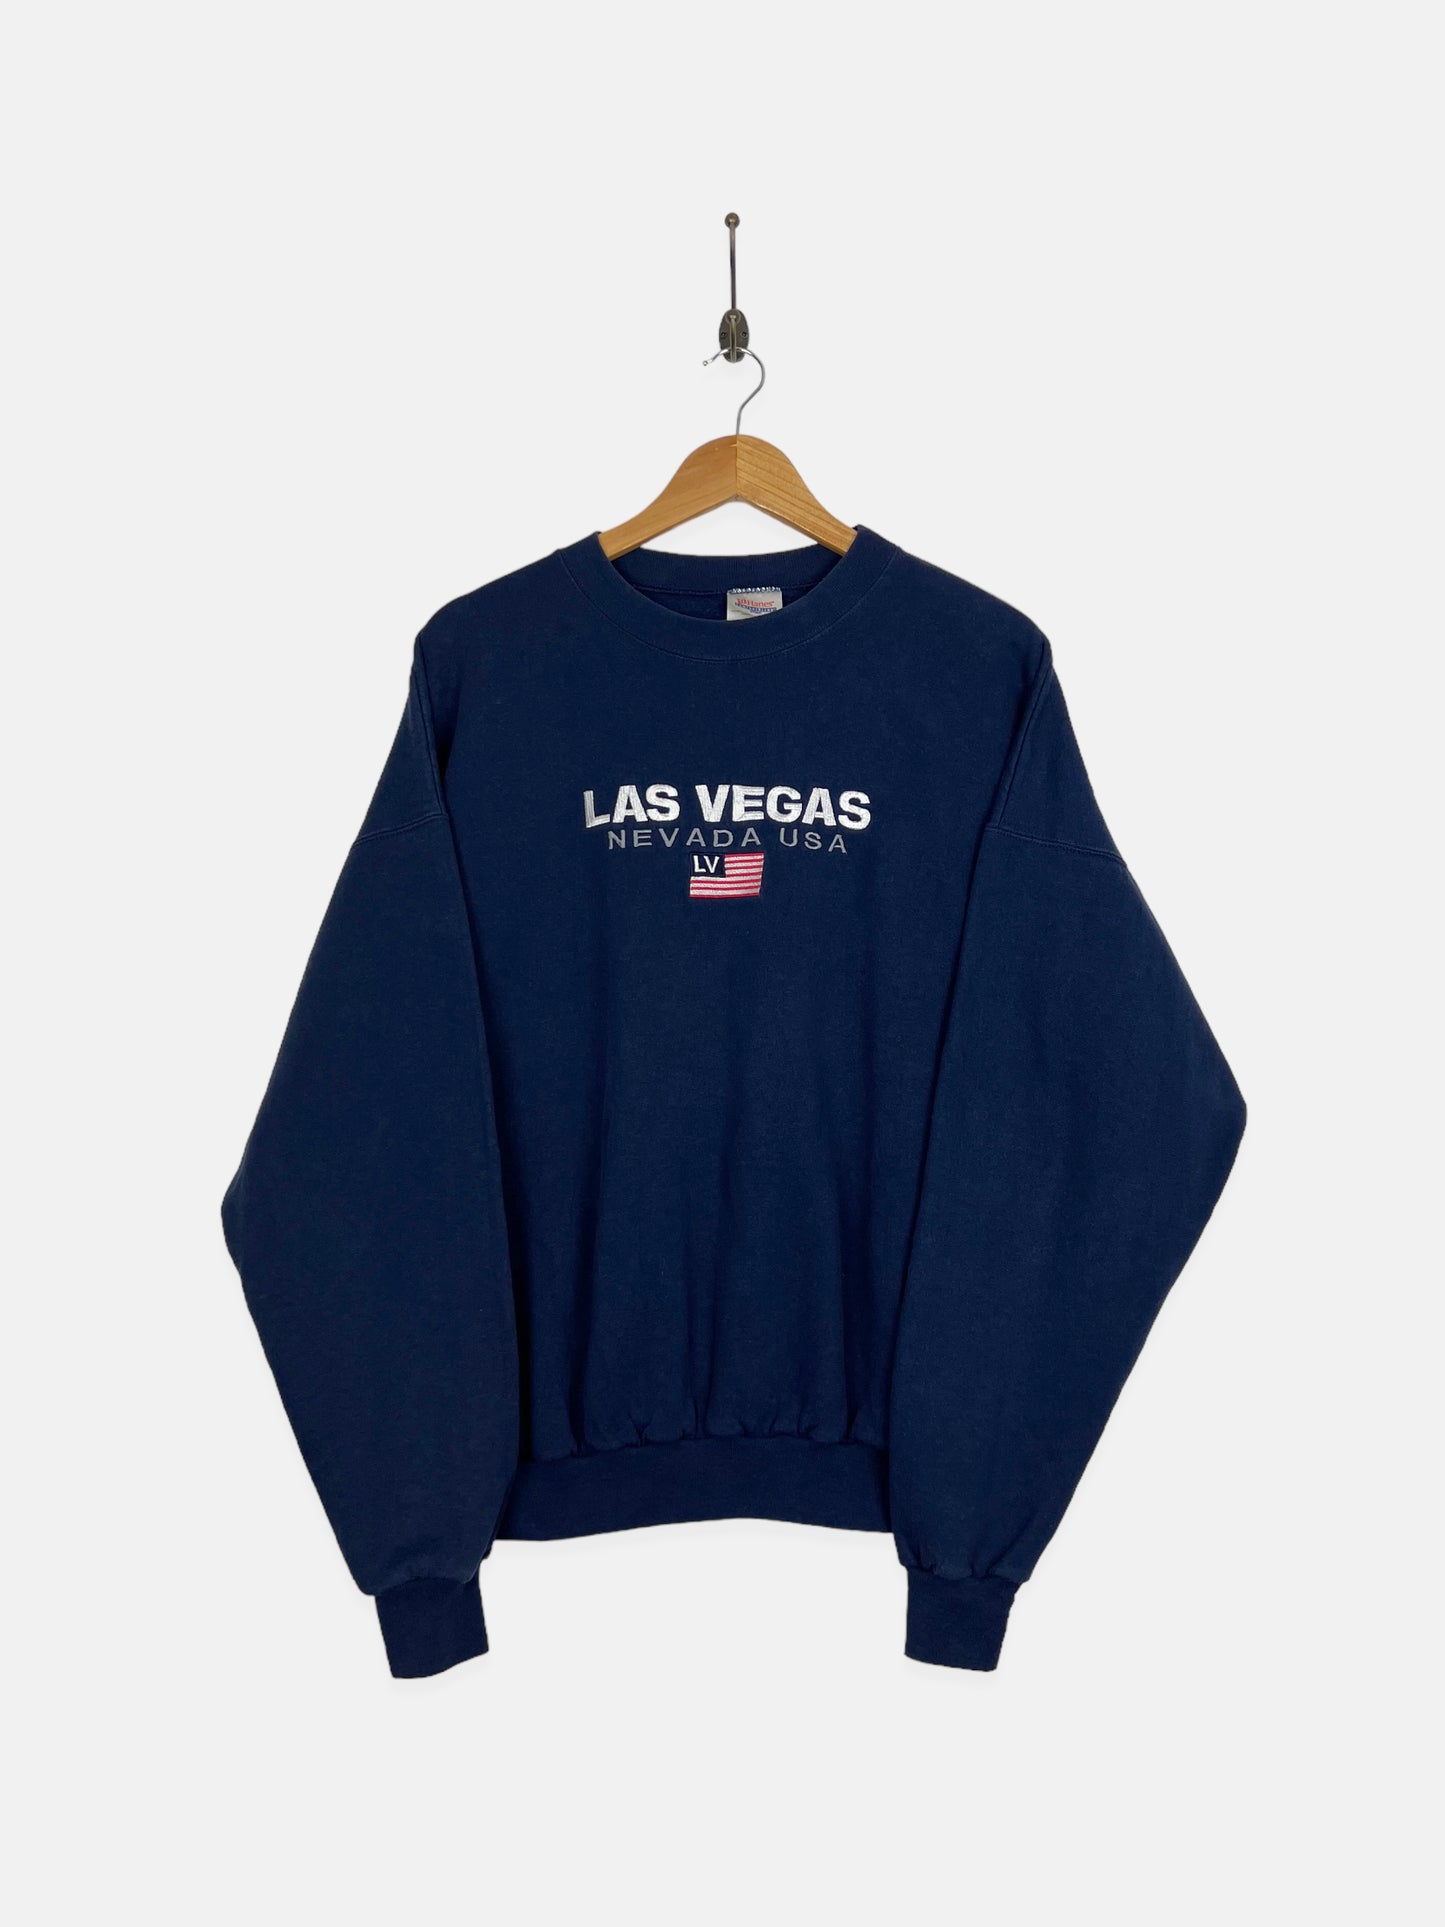 90's Las Vegas Nevada Embroidered Vintage Sweatshirt Size M-L